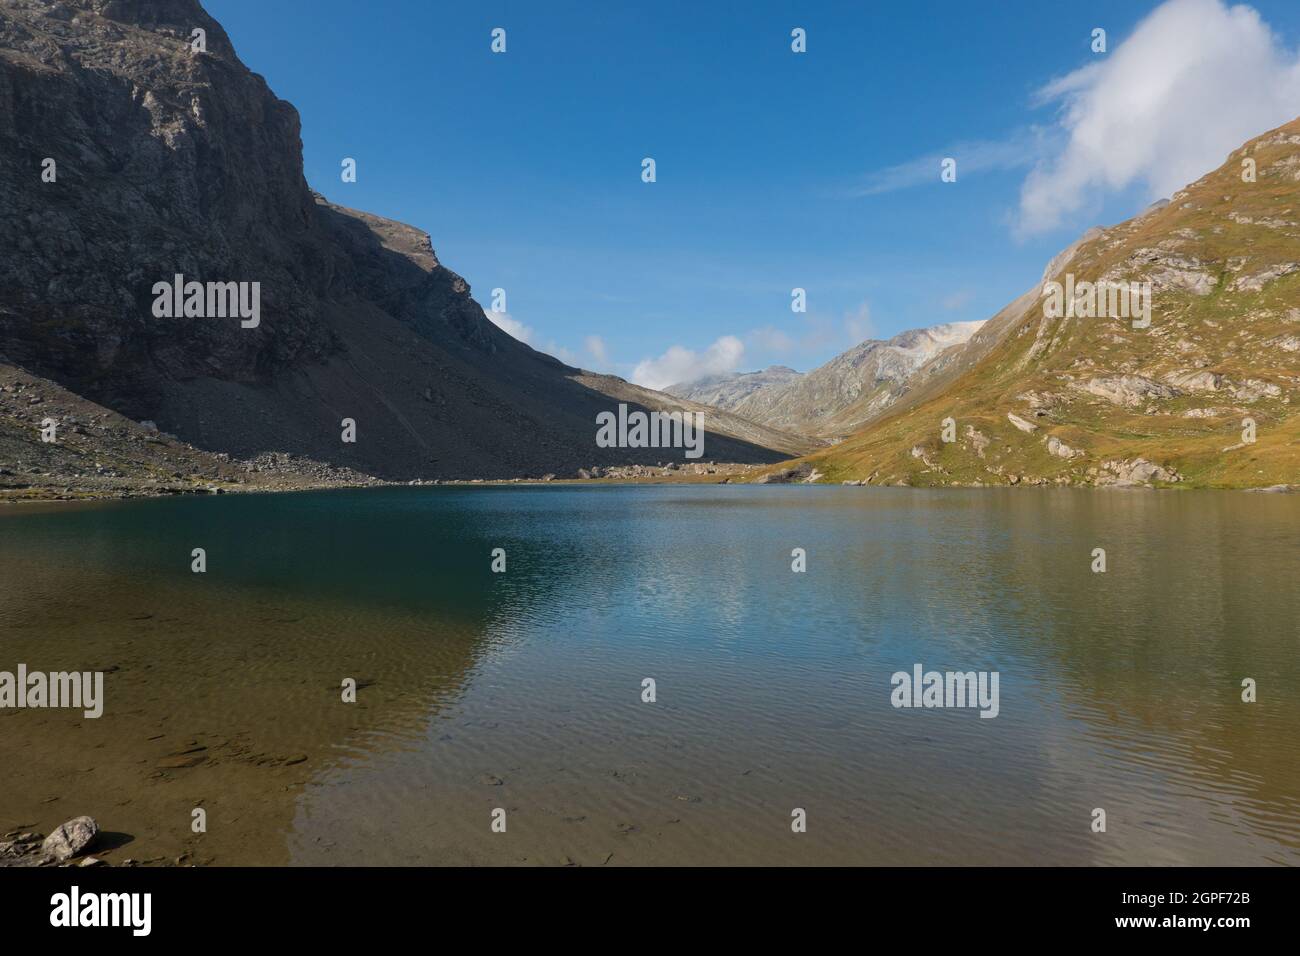 Lac de montagne, montagnes reflétées dans l'eau douce miroir, rochers escarpés et prairie alpine Banque D'Images